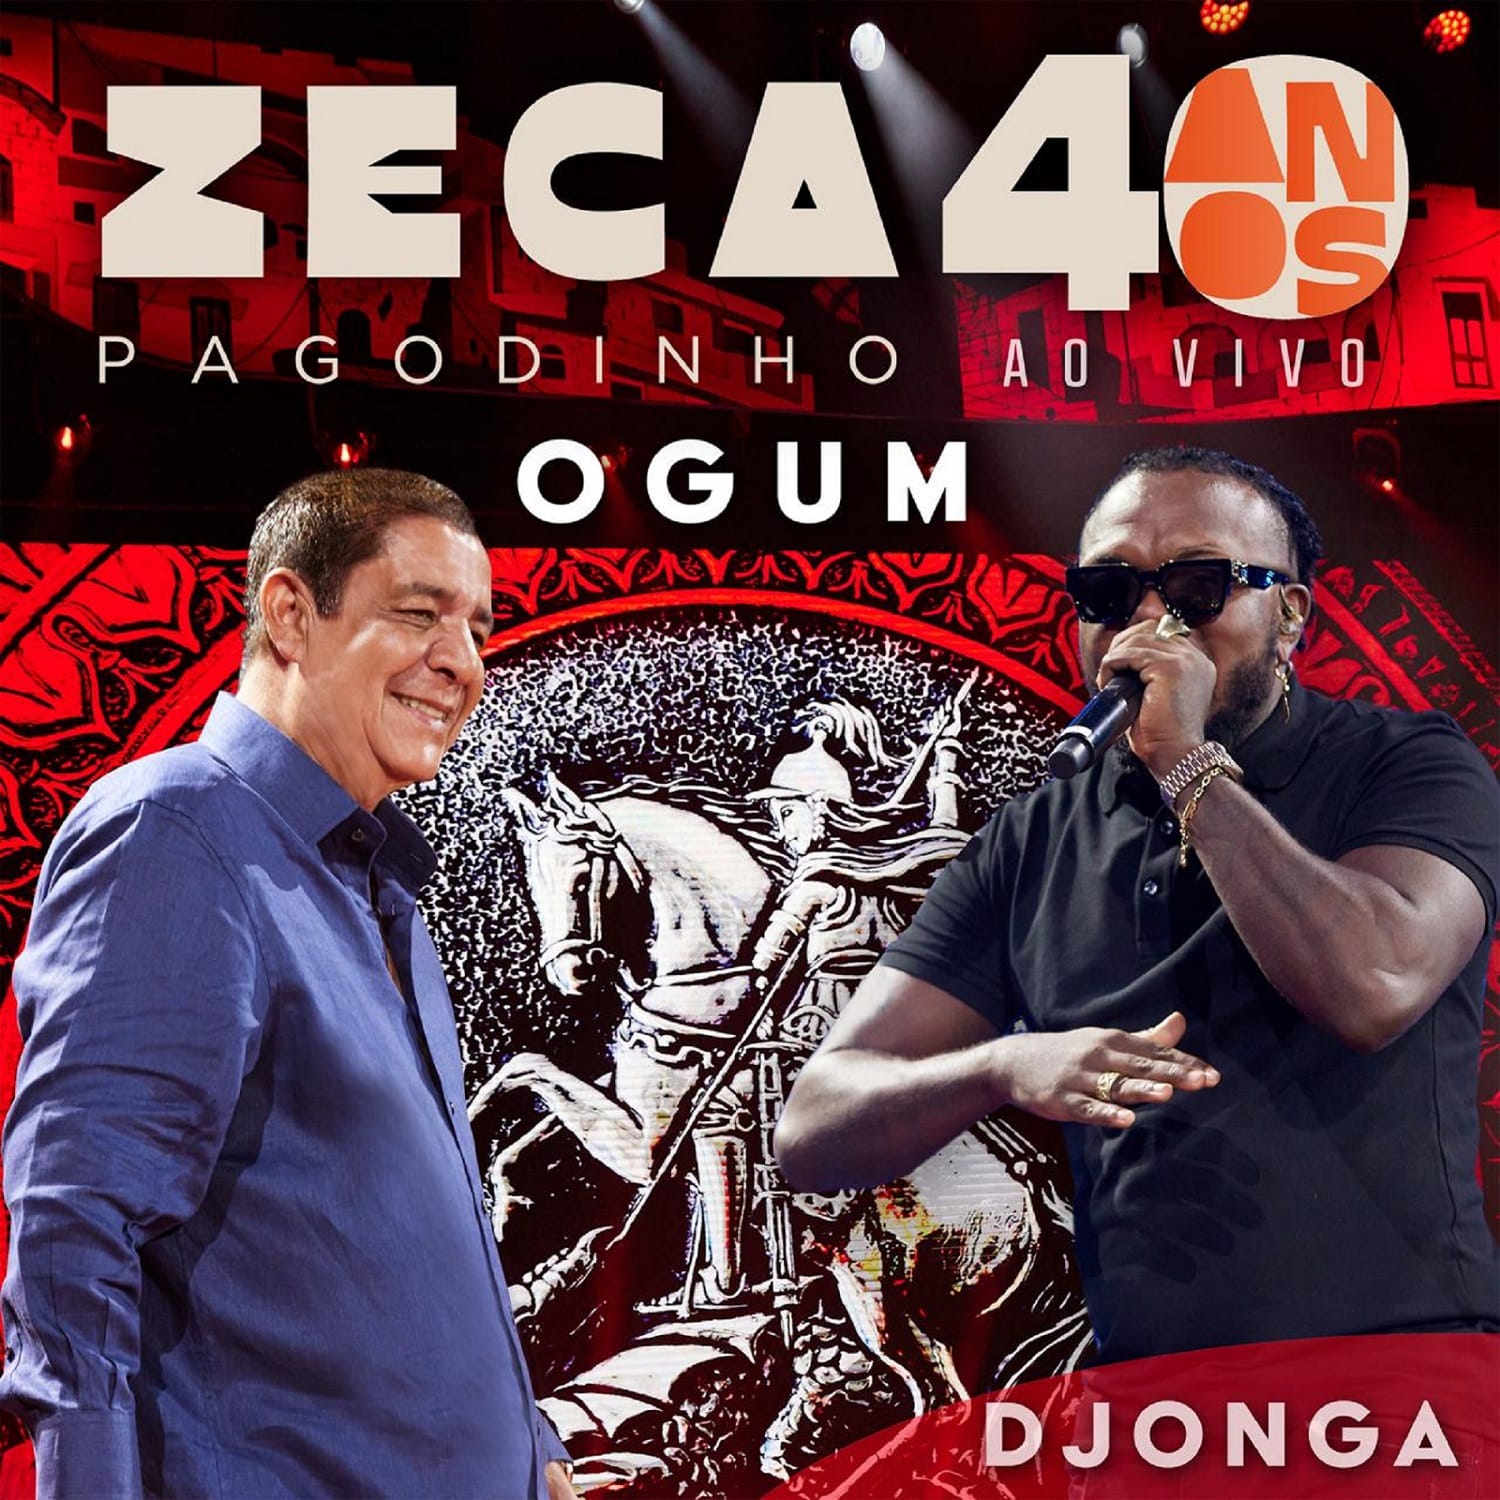 revistaprosaversoearte.com - Zeca Pagodinho celebra 40 anos de carreira com lançamento de single e audiovisual